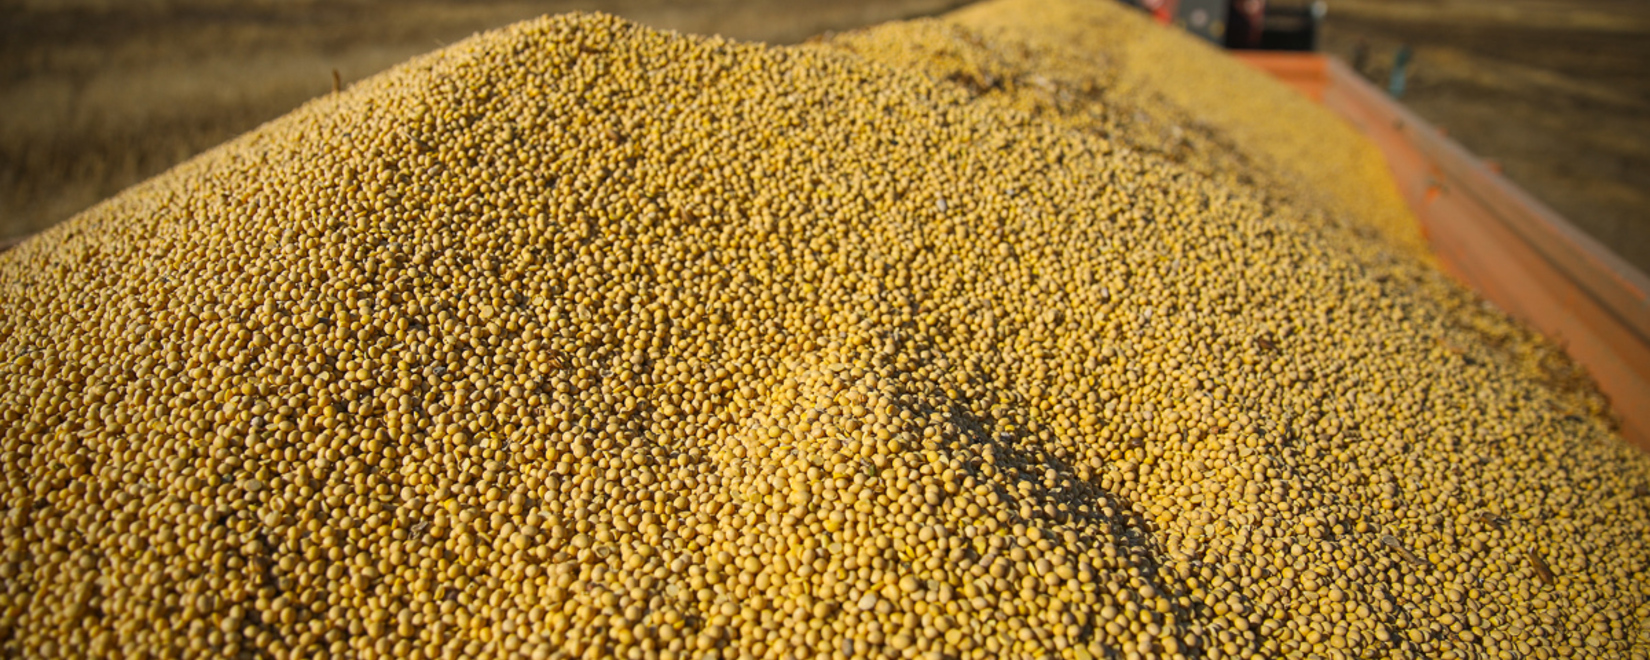 Бразилия в первой декаде сентября экспортировала по 2 млн тонн кукурузы и сои